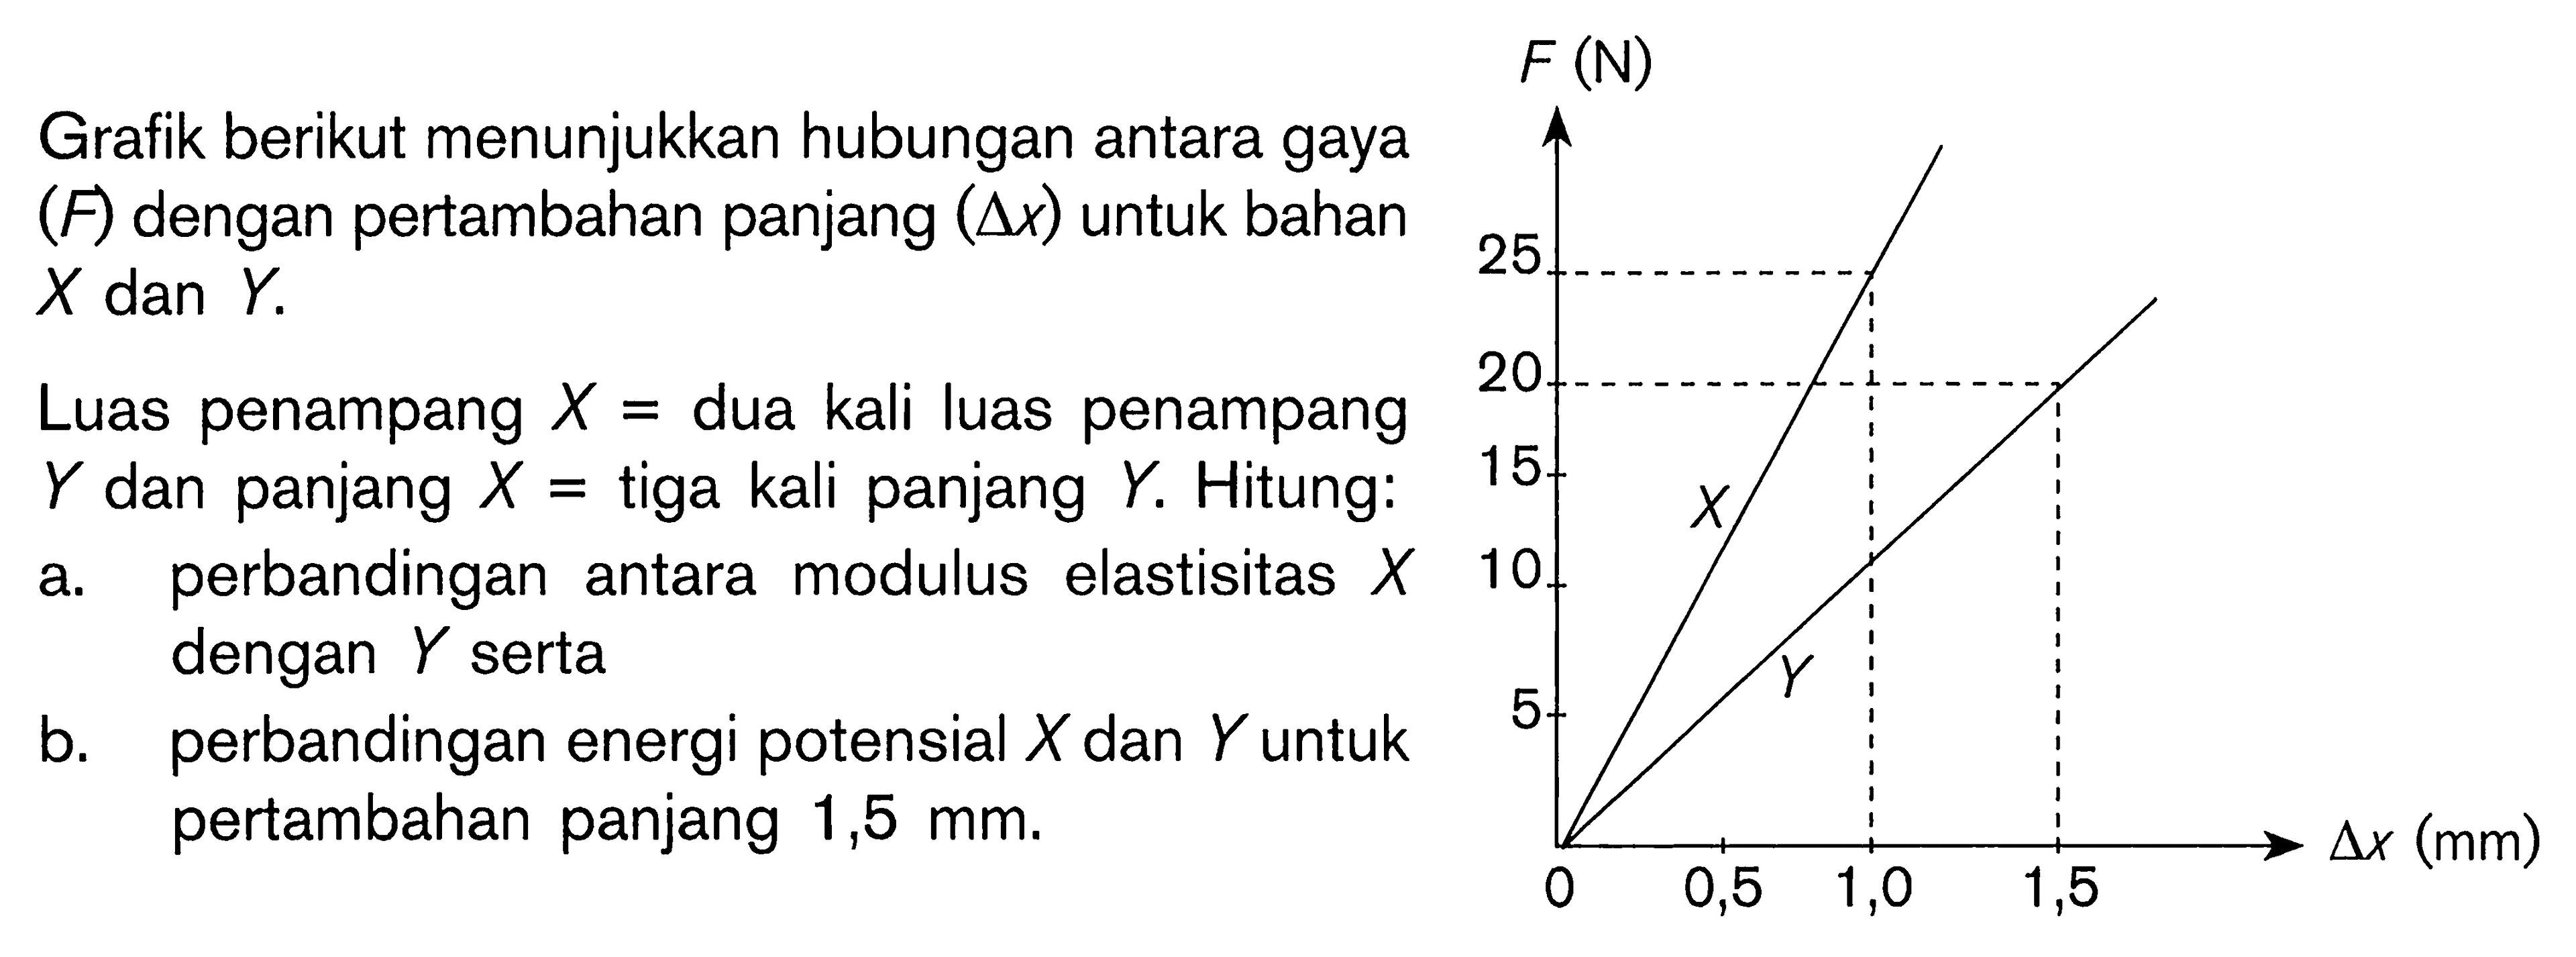 Grafik berikut menunjukkan hubungan antara gaya (F) dengan pertambahan panjang (segitiga x) untuk bahan X dan Y.Luas penampang X=dua kali luas penampang Y dan panjang X=tiga kali panjang Y. Hitung:a. perbandingan antara modulus elastisitas X b. perbandingan energi potensial X dan Y untukpertambahan panjang 1,5 mm.